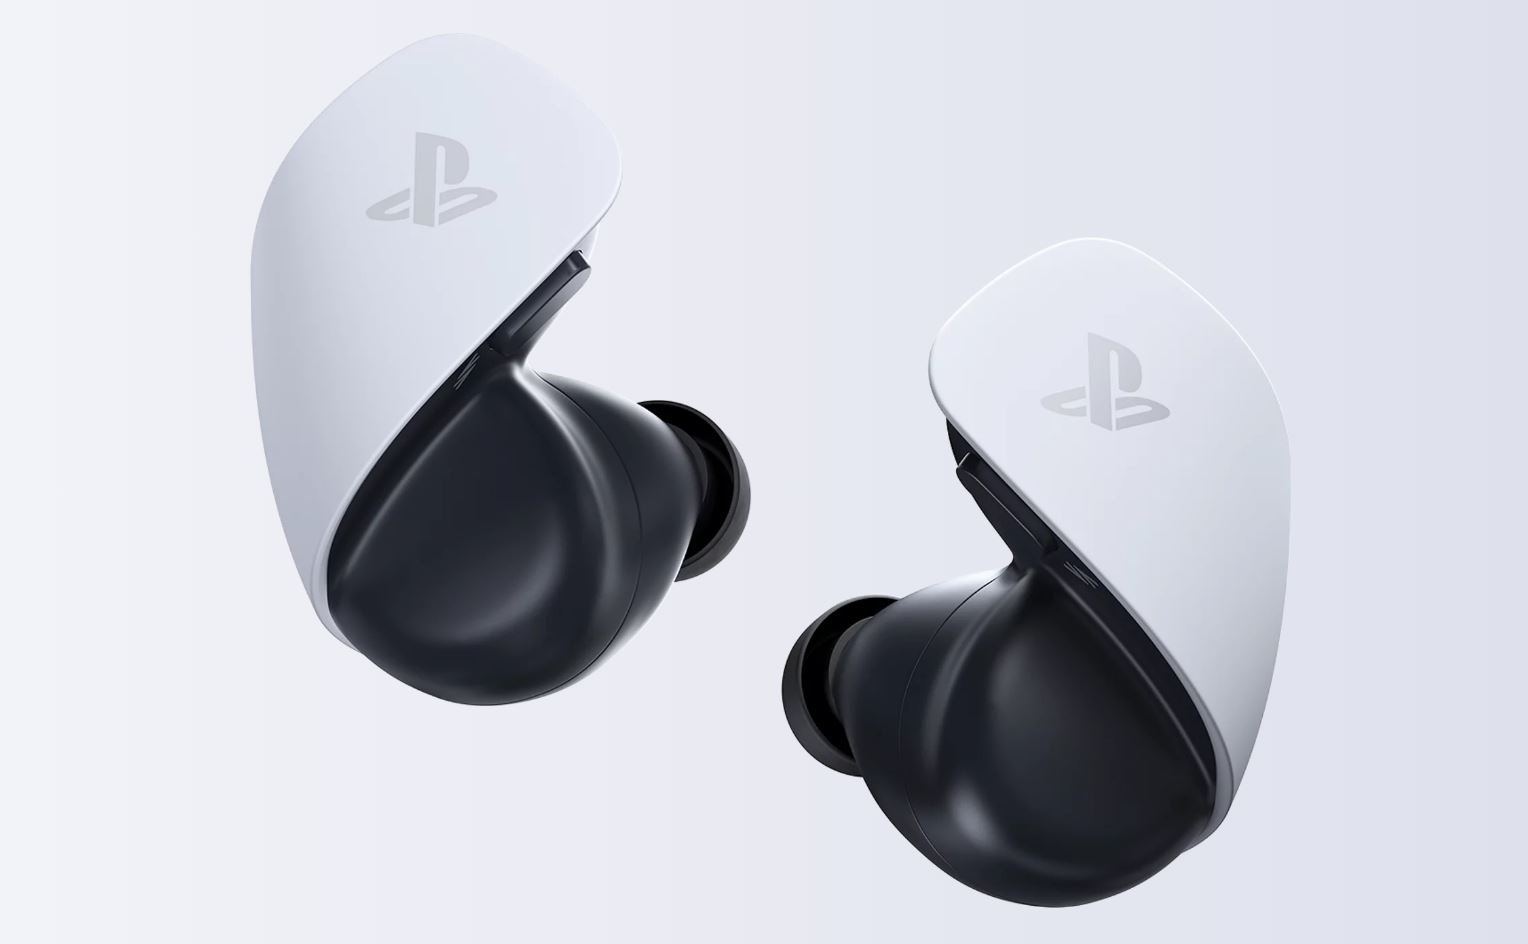 MAJ le 06/12 Ecouteurs sans fil Sony Pulse Explore pour PS5